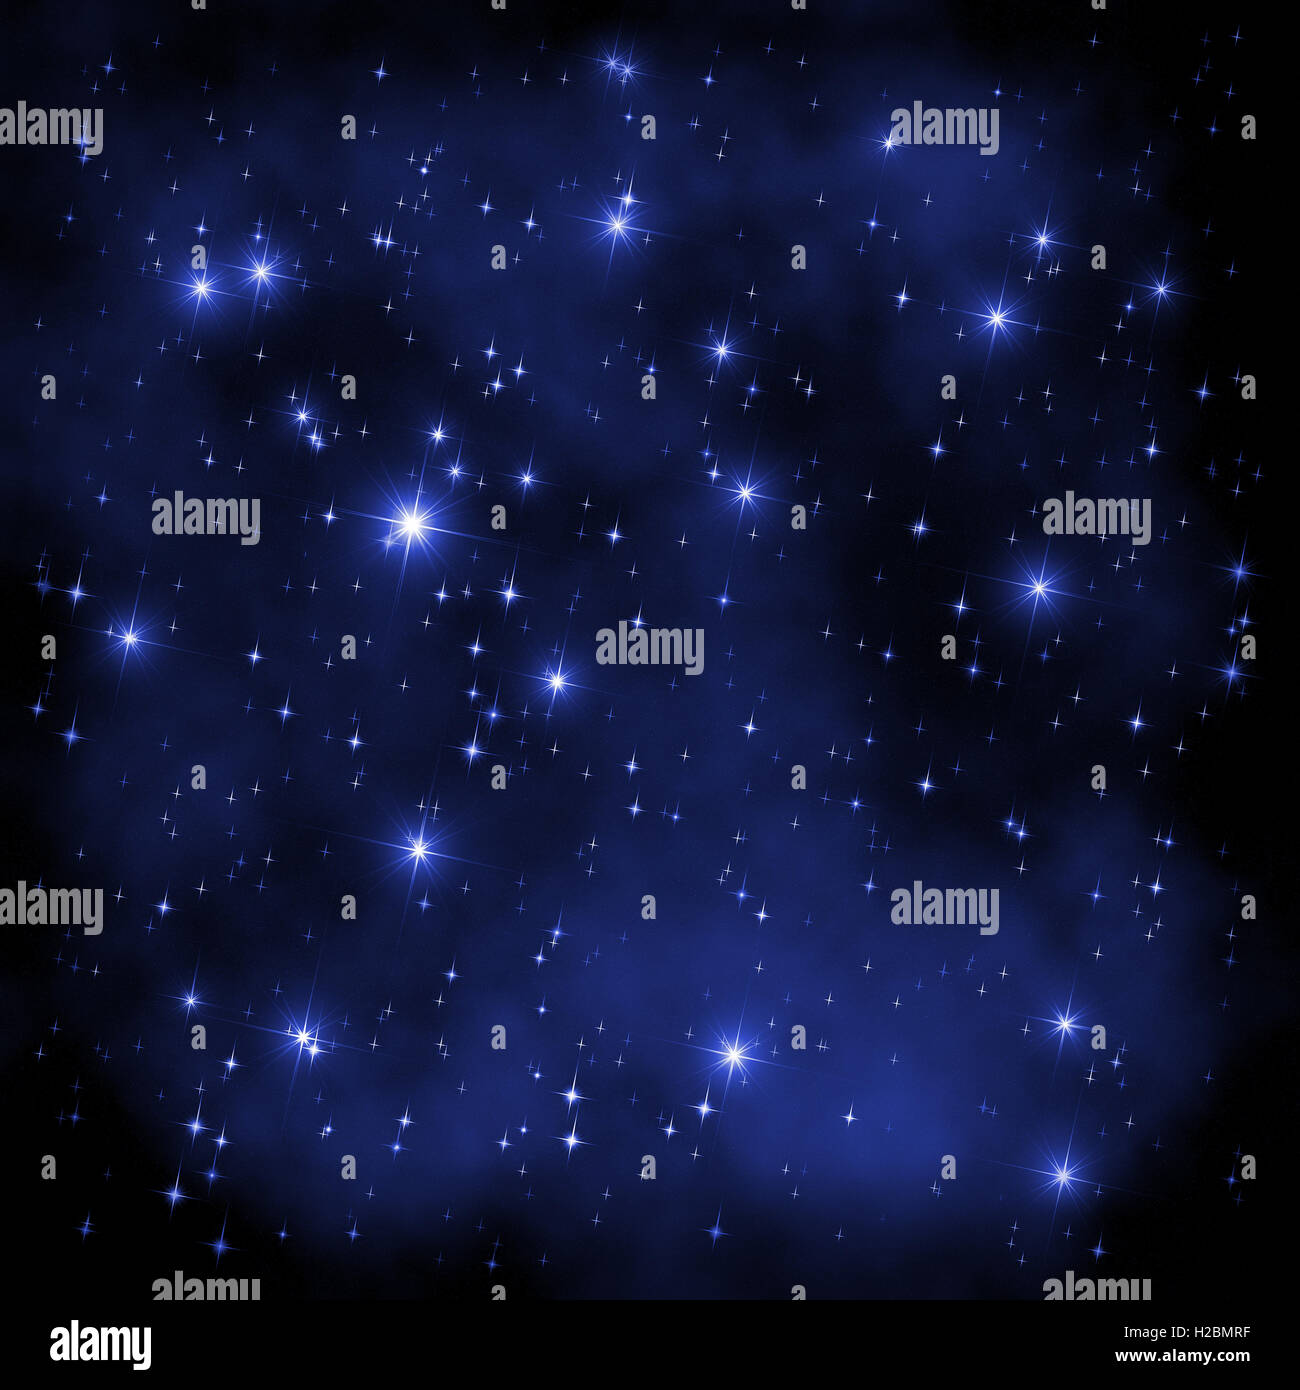 Spazio astratto illustrazione: stelle blu di diverse dimensioni su un sfondo nebulose. Può essere usato come una carta da parati, telaio, di confine Foto Stock